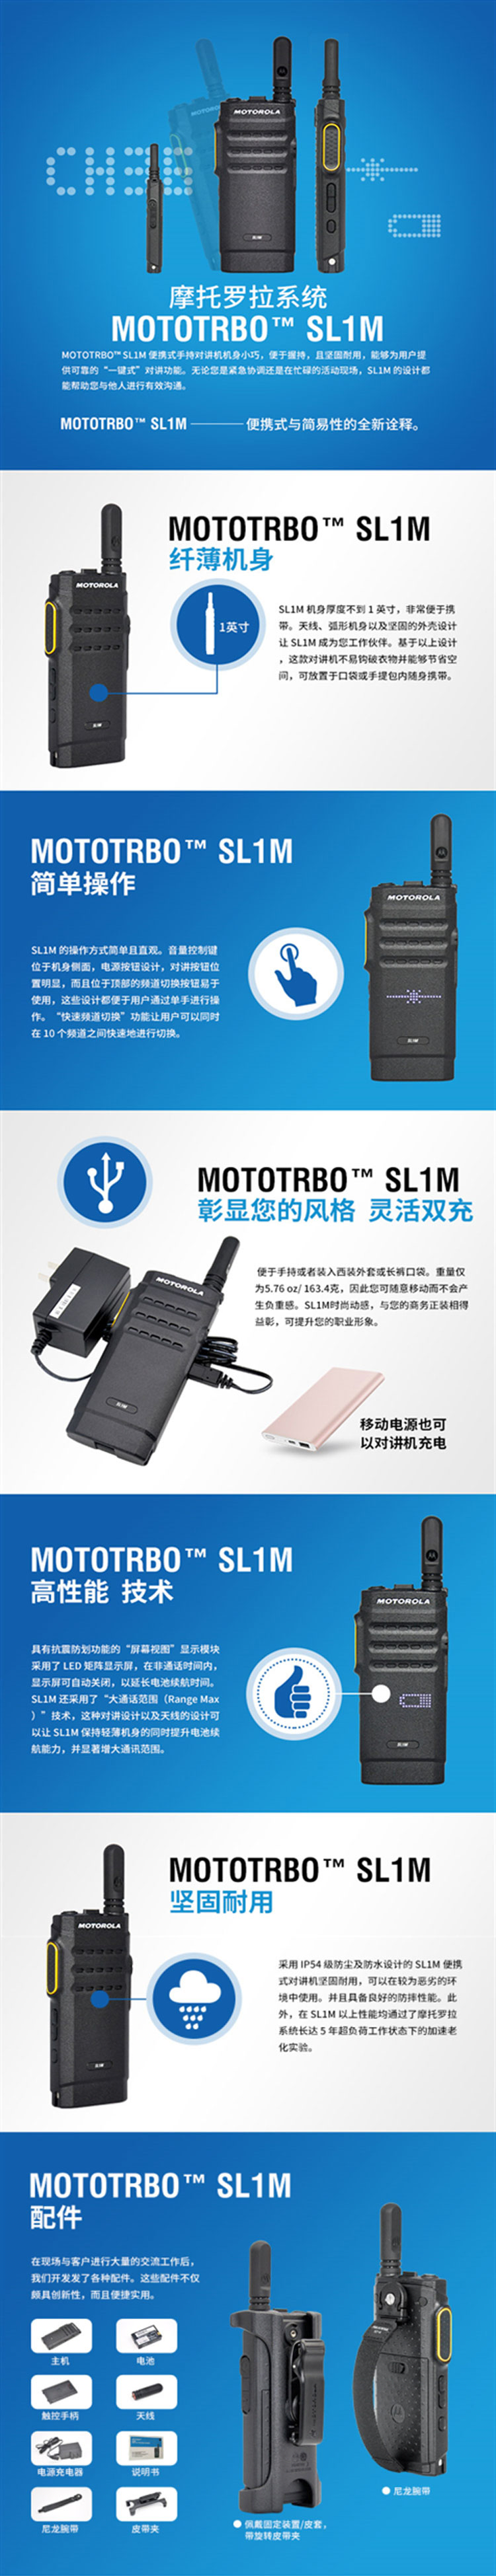 SL1M 便携式手持对讲机